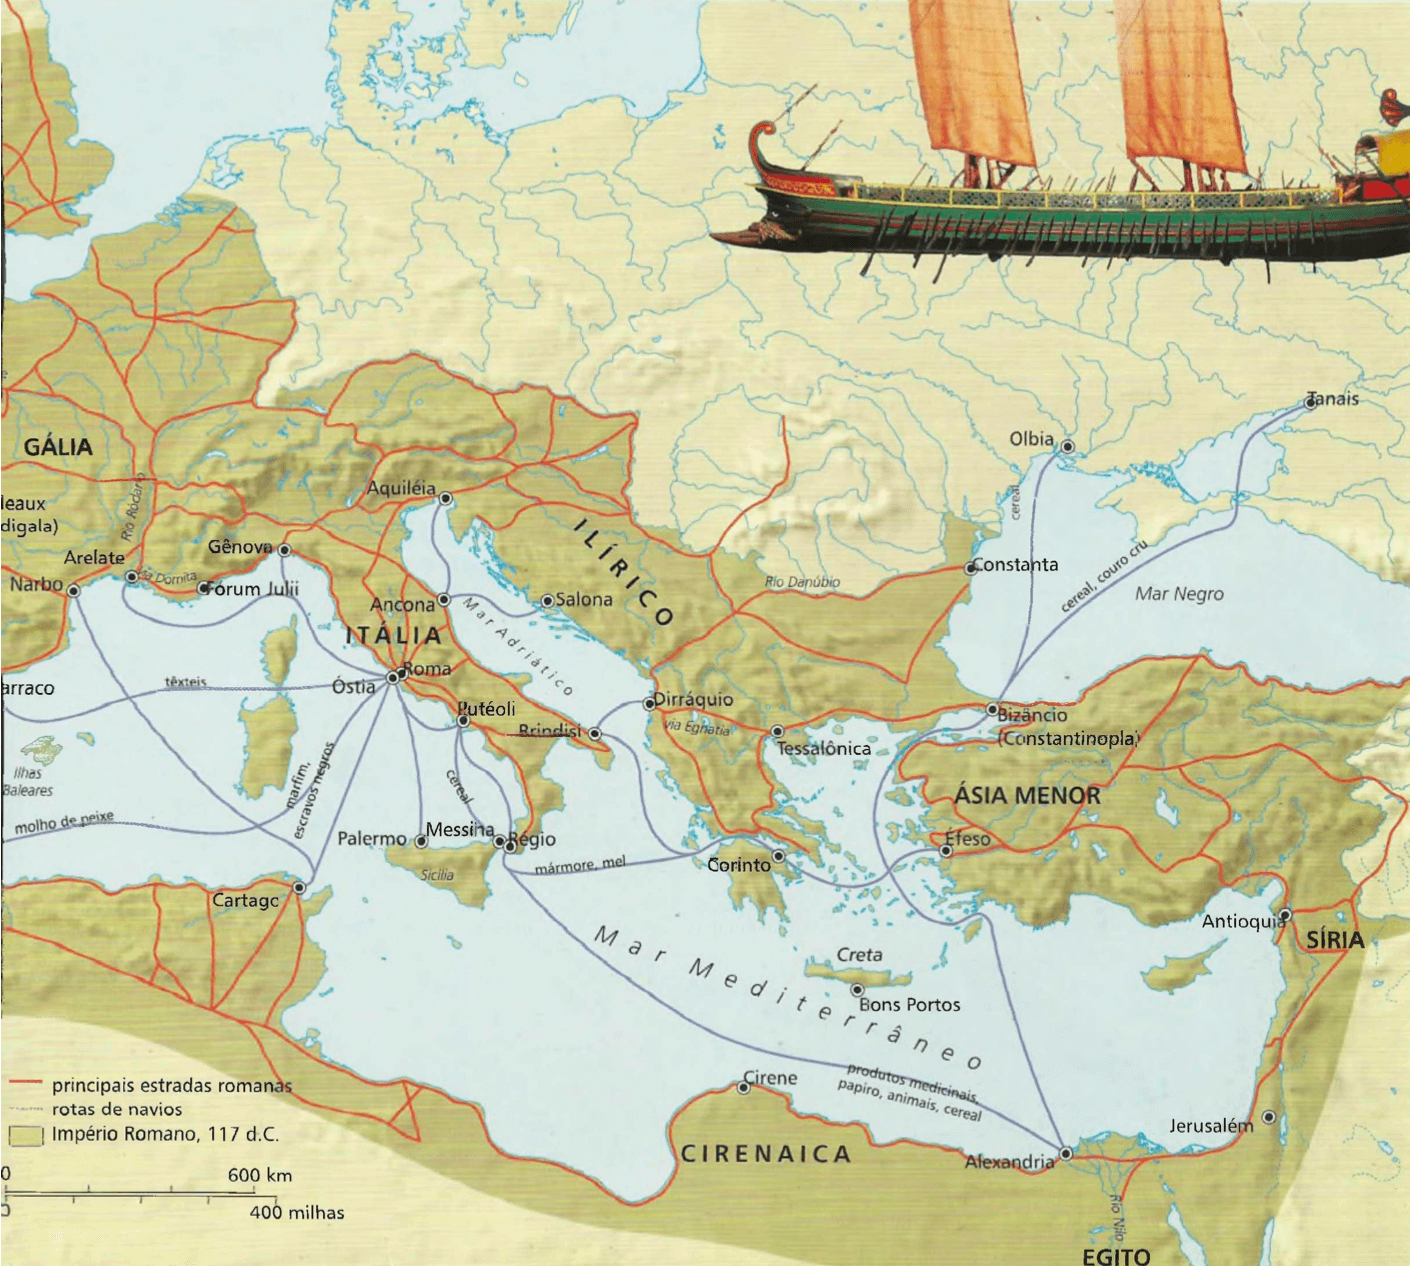 Rotas de viagem e comércio do Império Romano Por volta de 74 d.C., todo o território ao redor do Mediterrâneo estava sob domínio romano. Esta paz romana trouxe uma prosperidade sem precedentes.